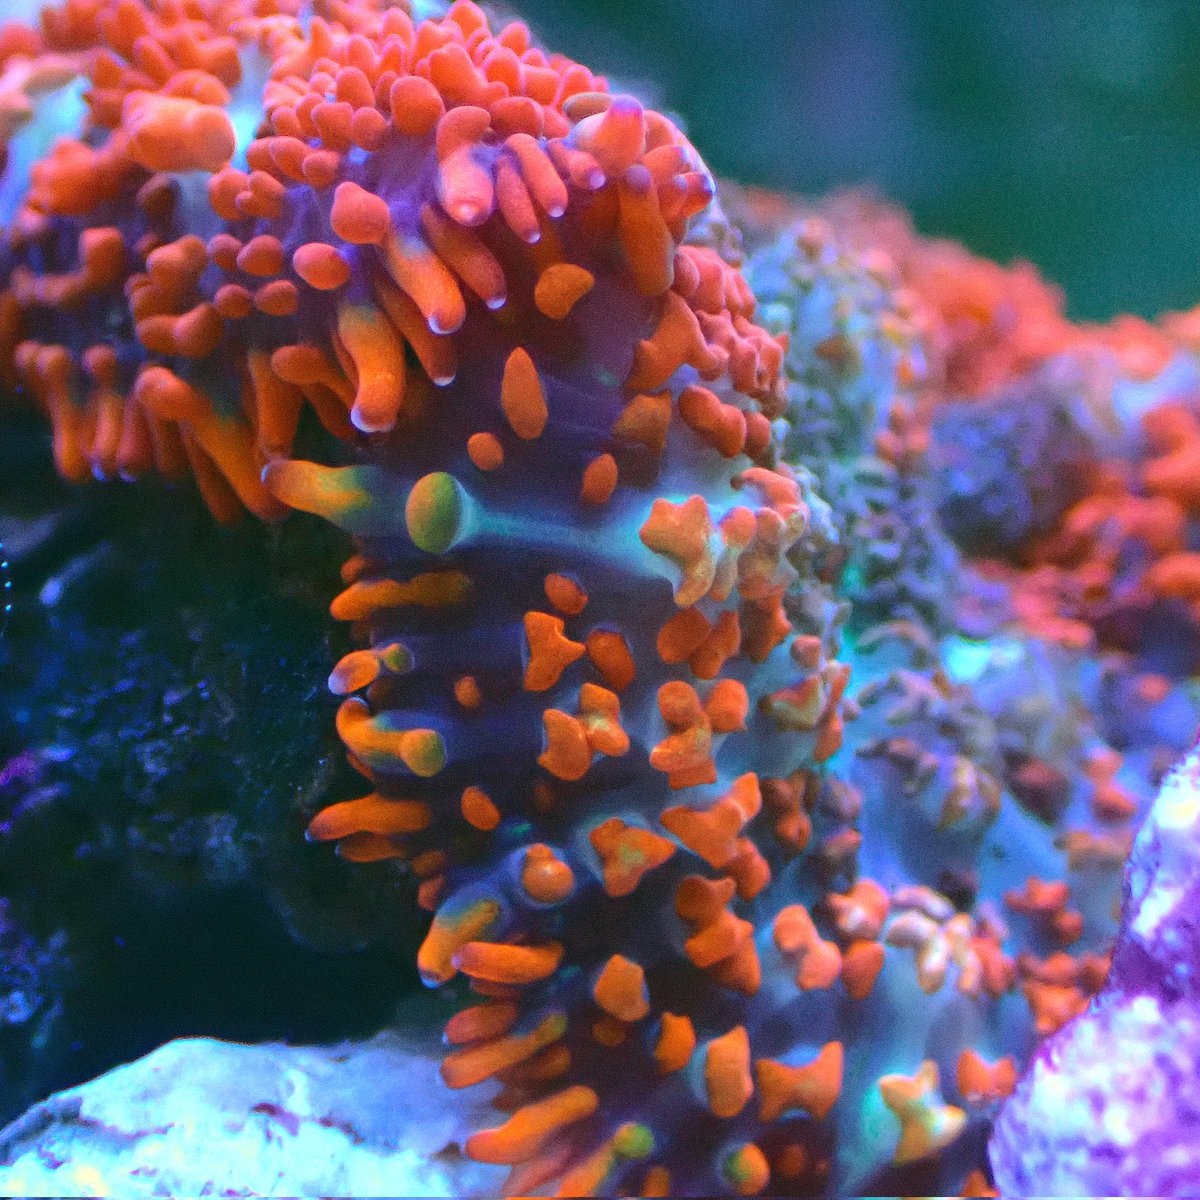 mushroom coral collection🍄😚
#ディスクコーラル